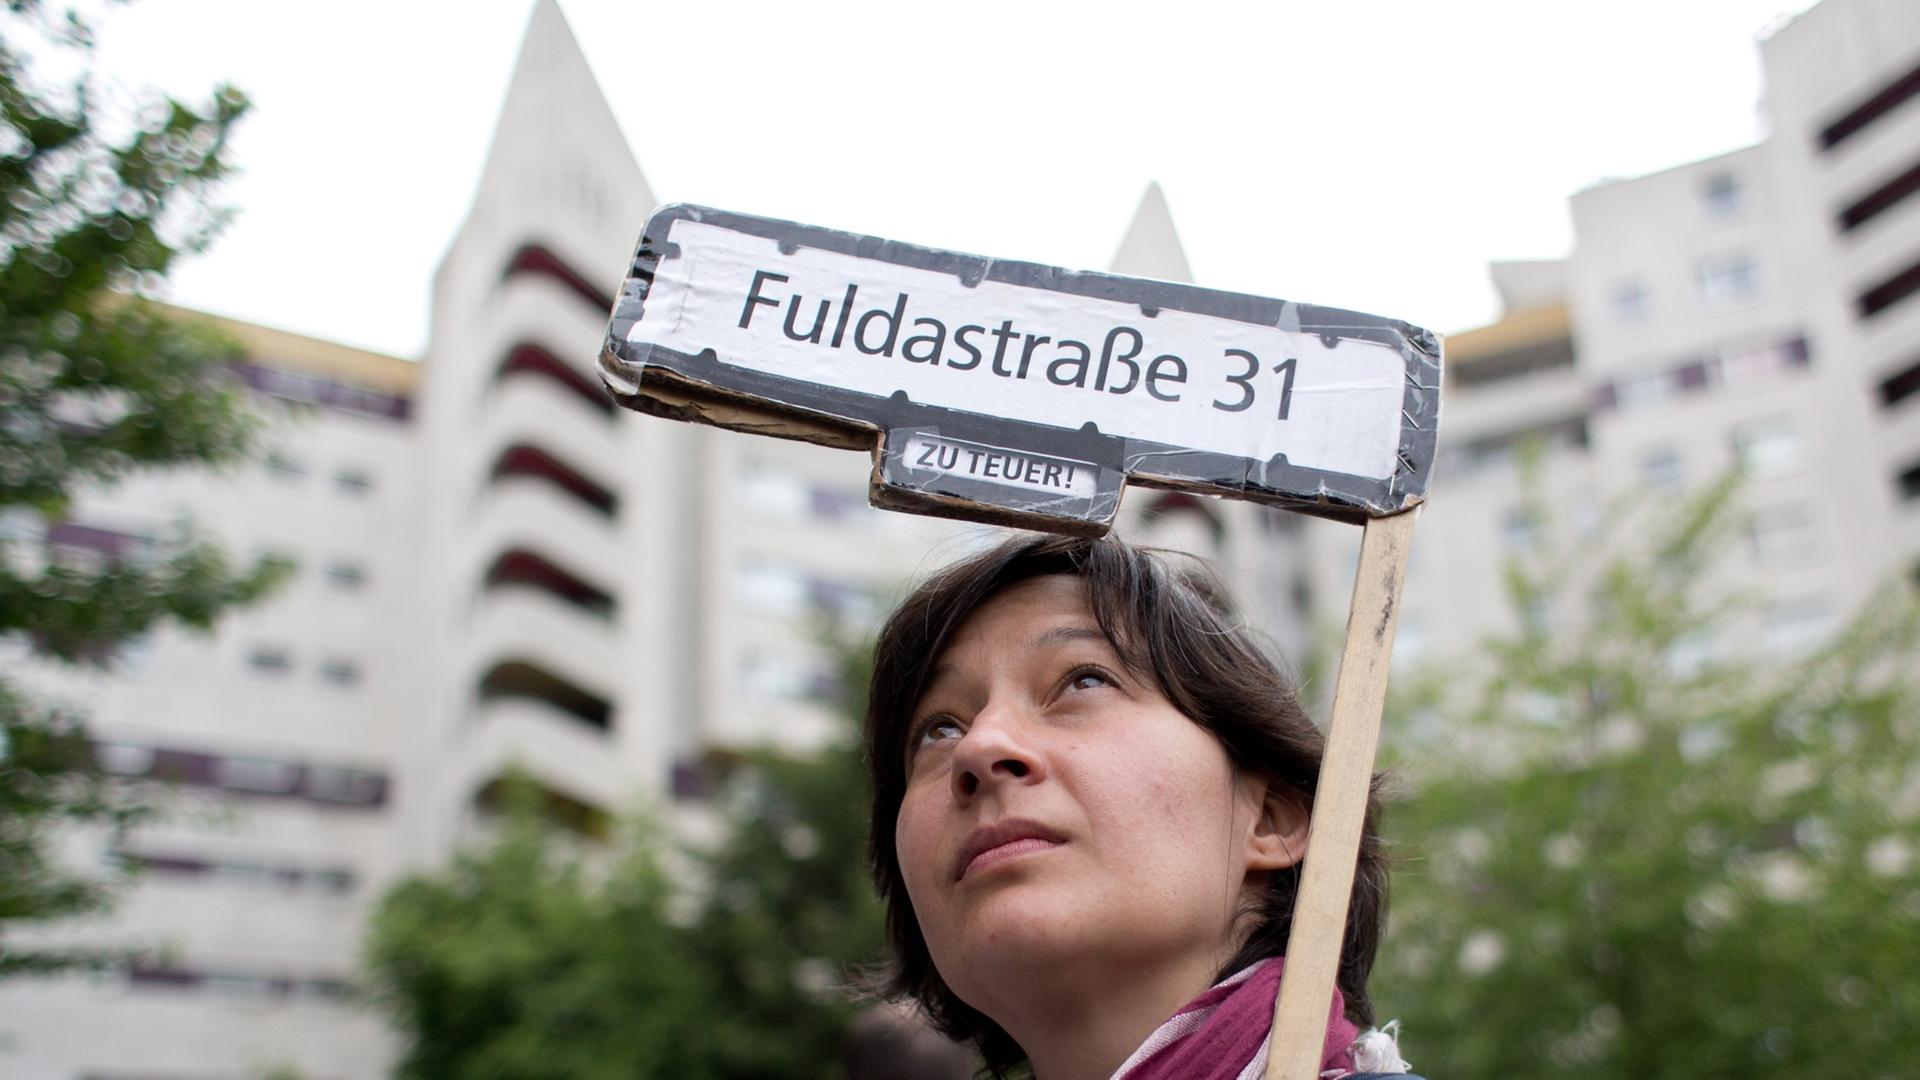 Eine Aktivistin hält ein Transparent hoch mit der Aufschrift "Fuldastraße 31 - zu teuer!" bei einer Demonstration gegen hohe Mieten und Verdrängung in Berlin.